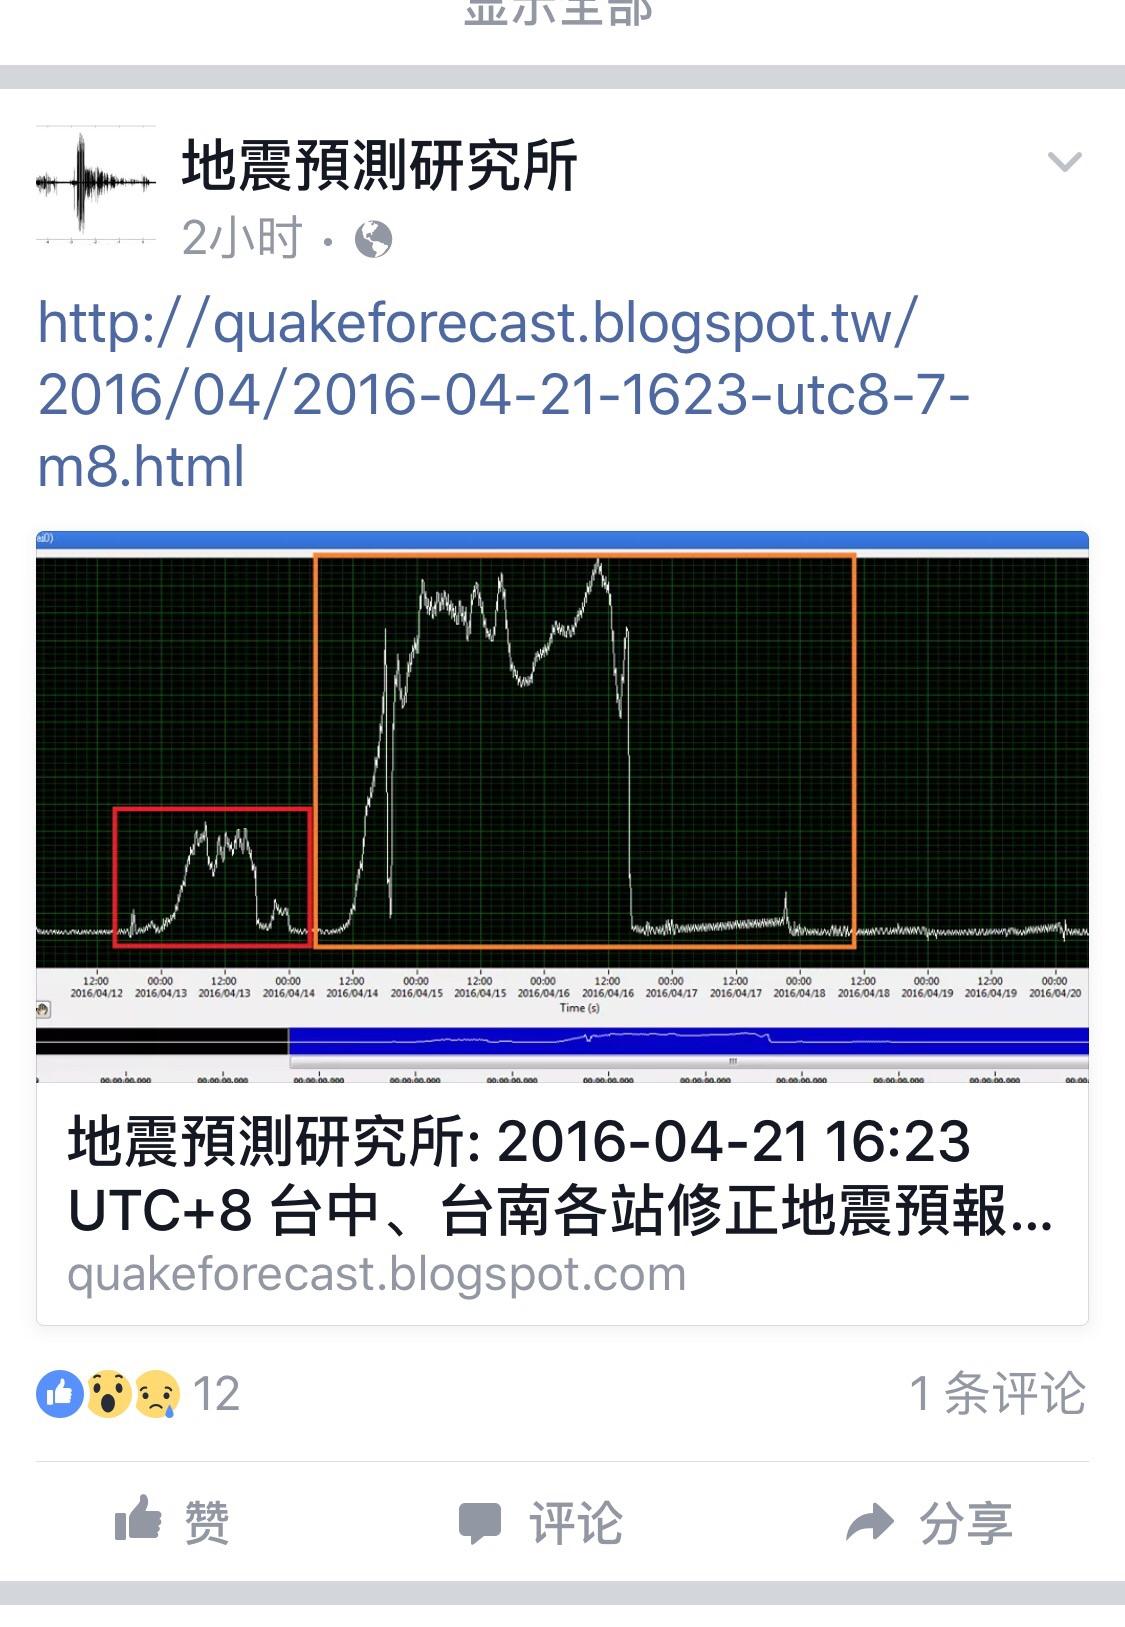 最近在Facebook上看到一个台湾的民间地震预